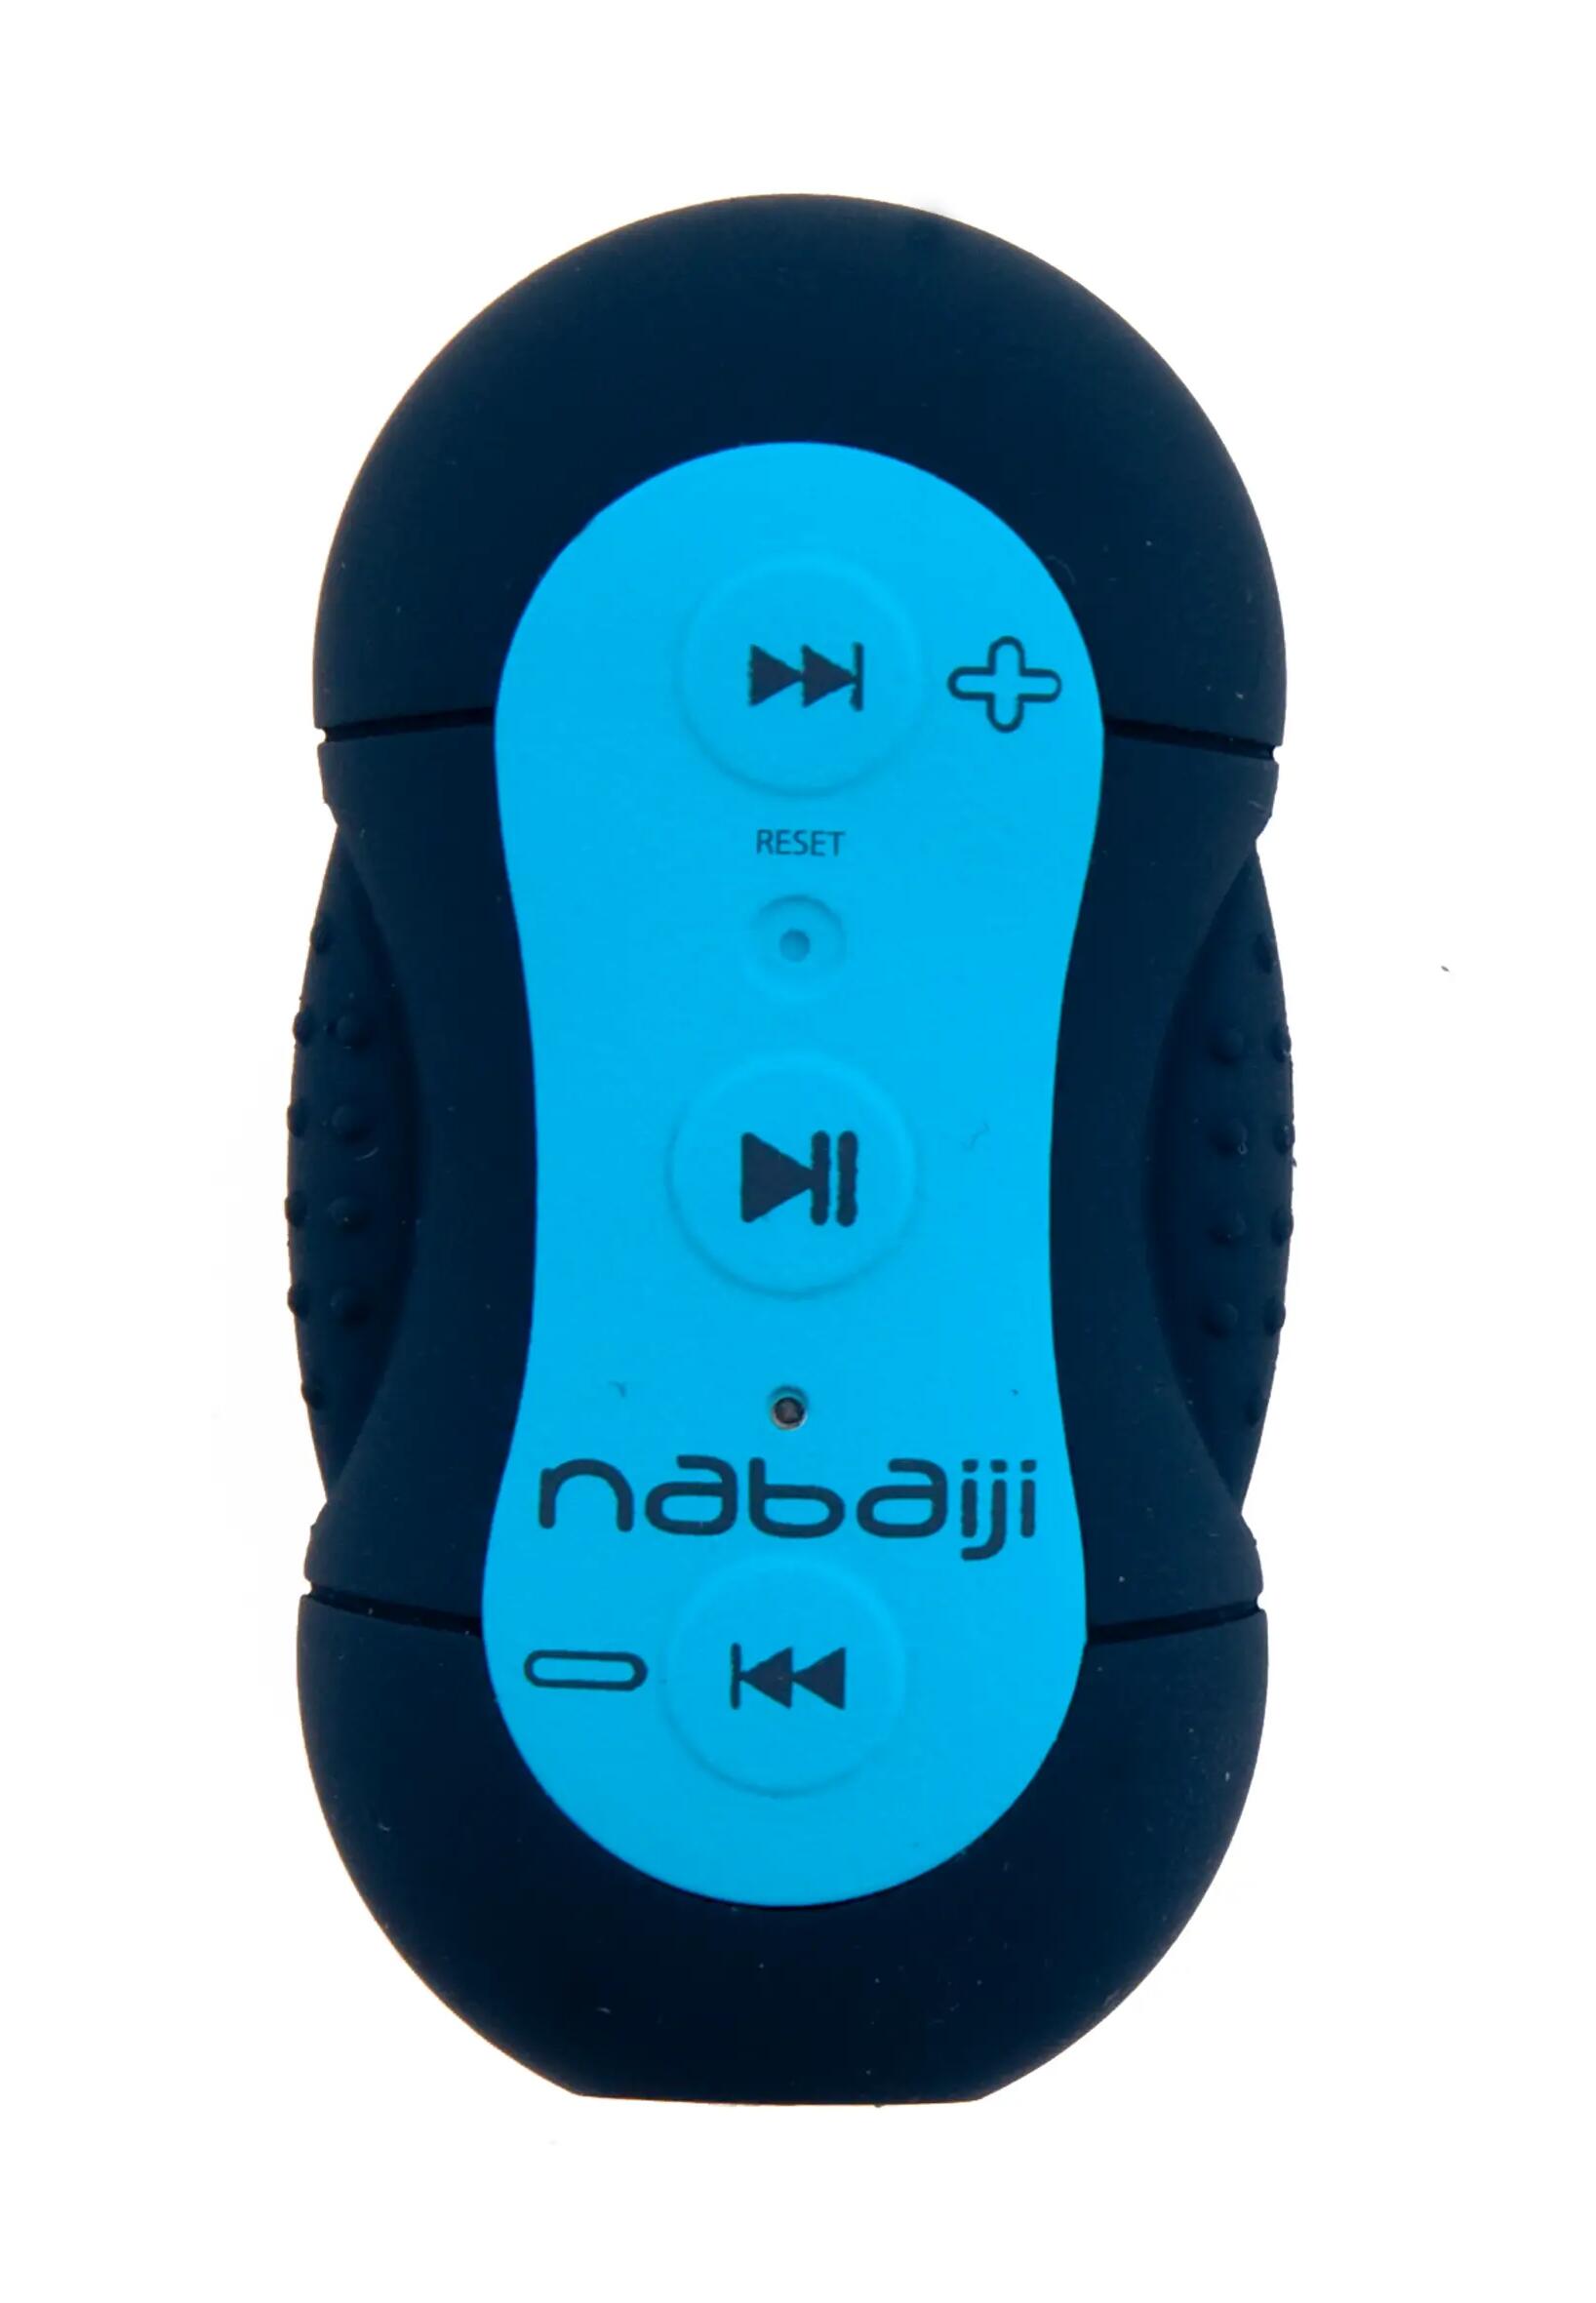 Nabaiji MP3 Delight